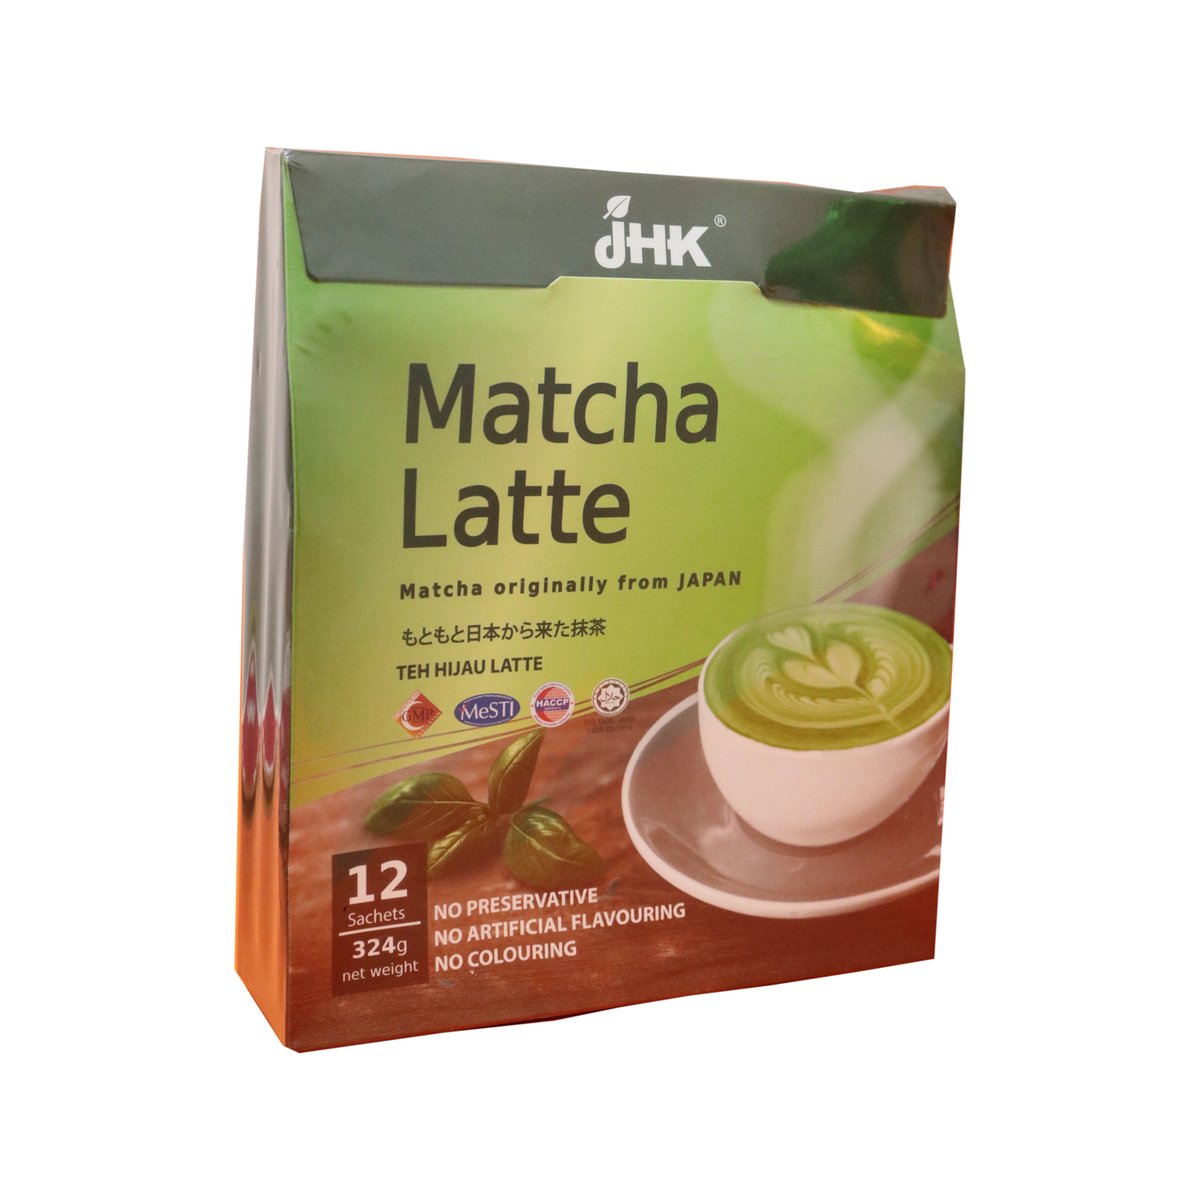 Jhk Matcha Latte 12 x 27g